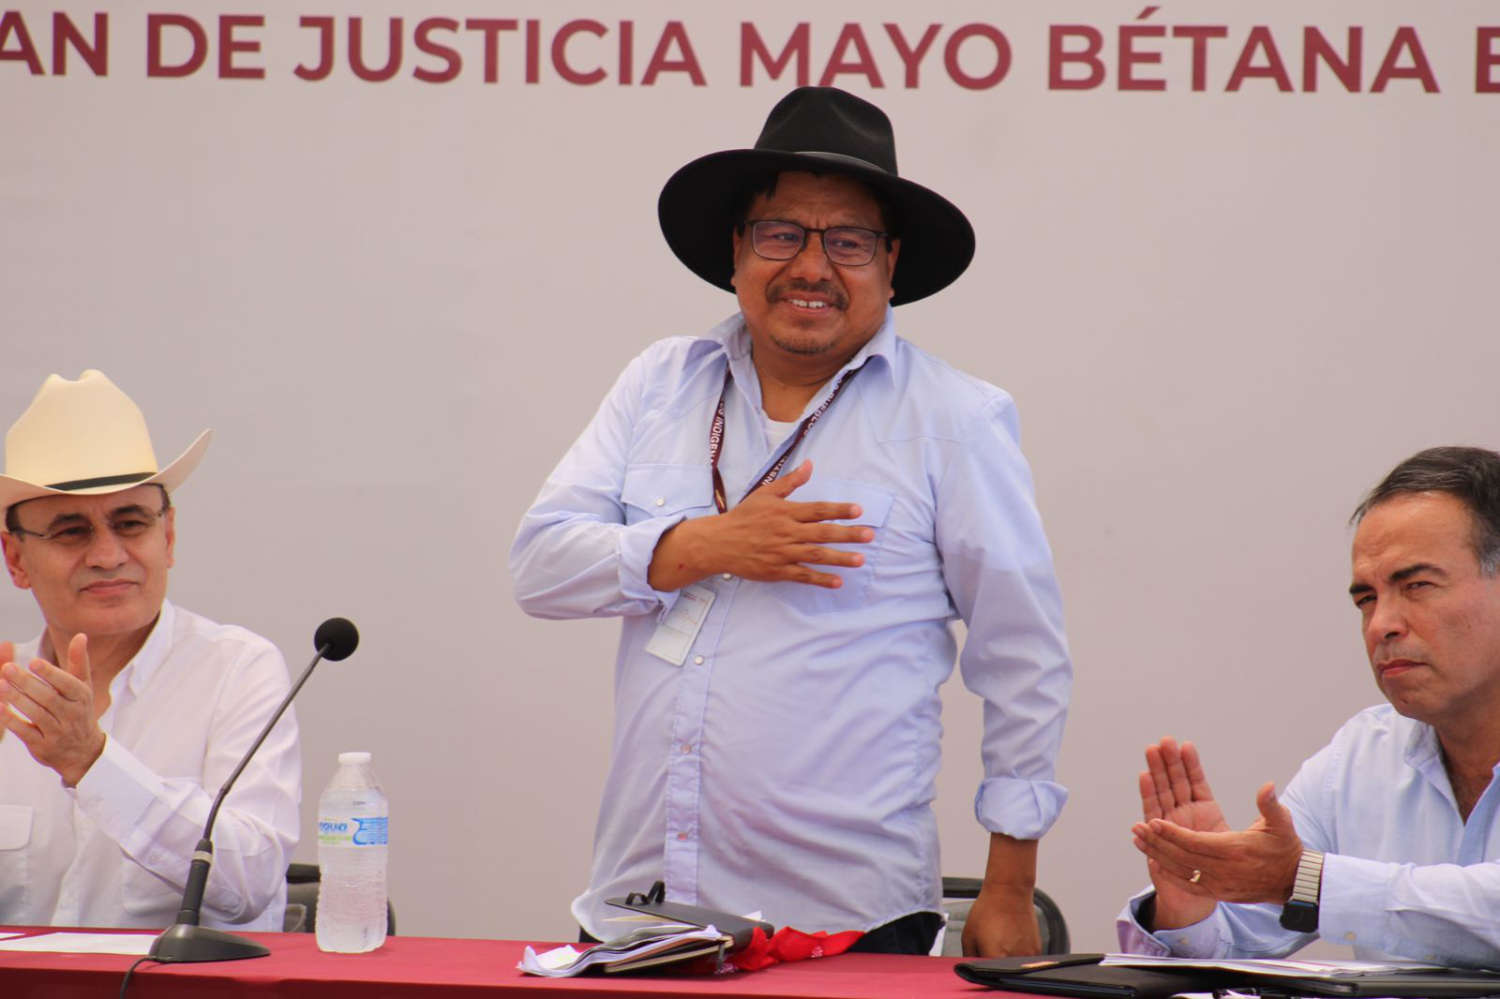 El Plan de Justicia del Pueblo Mayo es una herramienta de unidad y bienestar: Adelfo Regino.